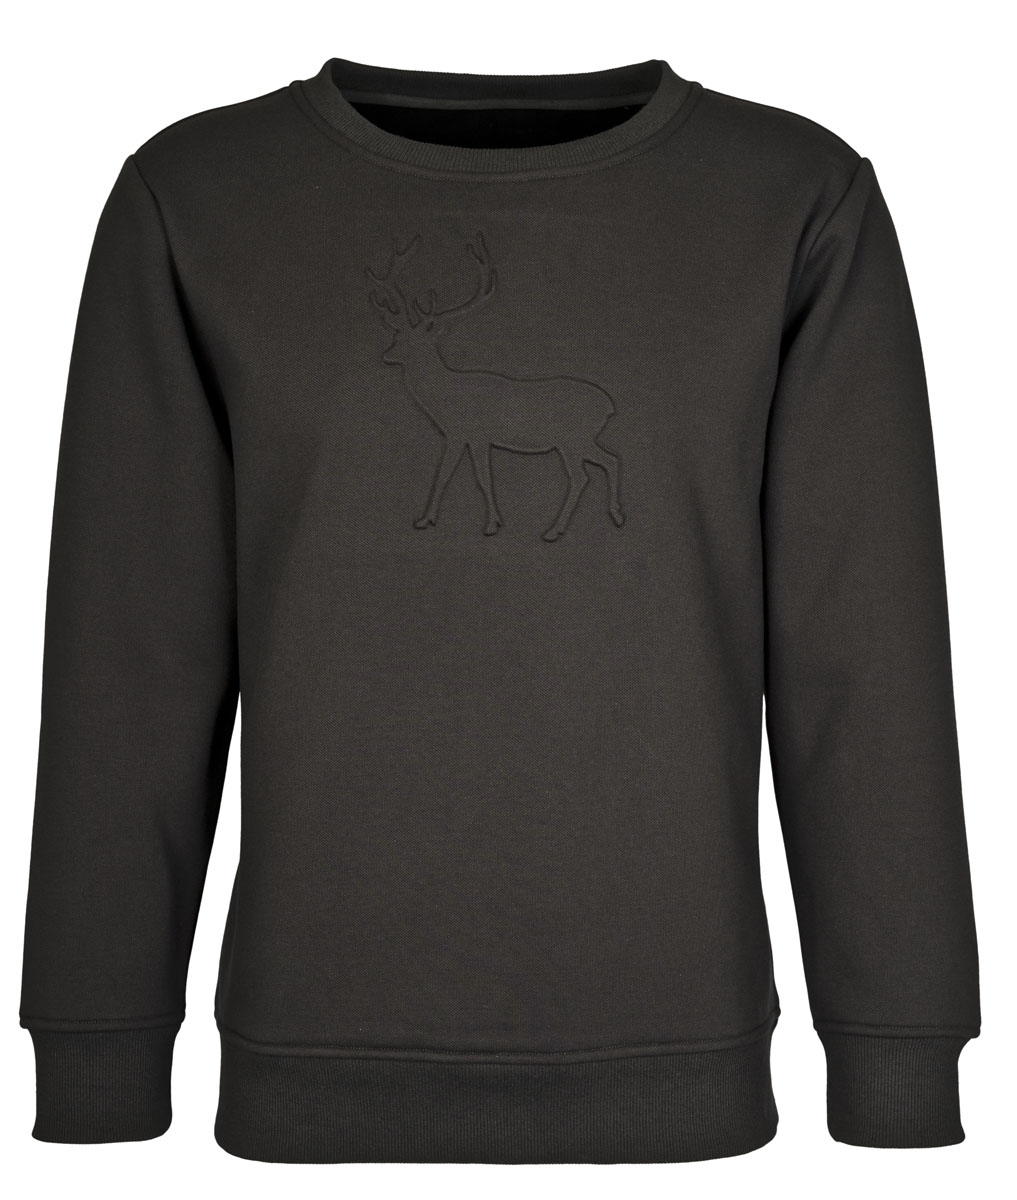 Das sportlich-elegante Sweatshirt mit attraktivem Hirsch-Motiv, gehört in jeden Jäger-Kleiderschrank.